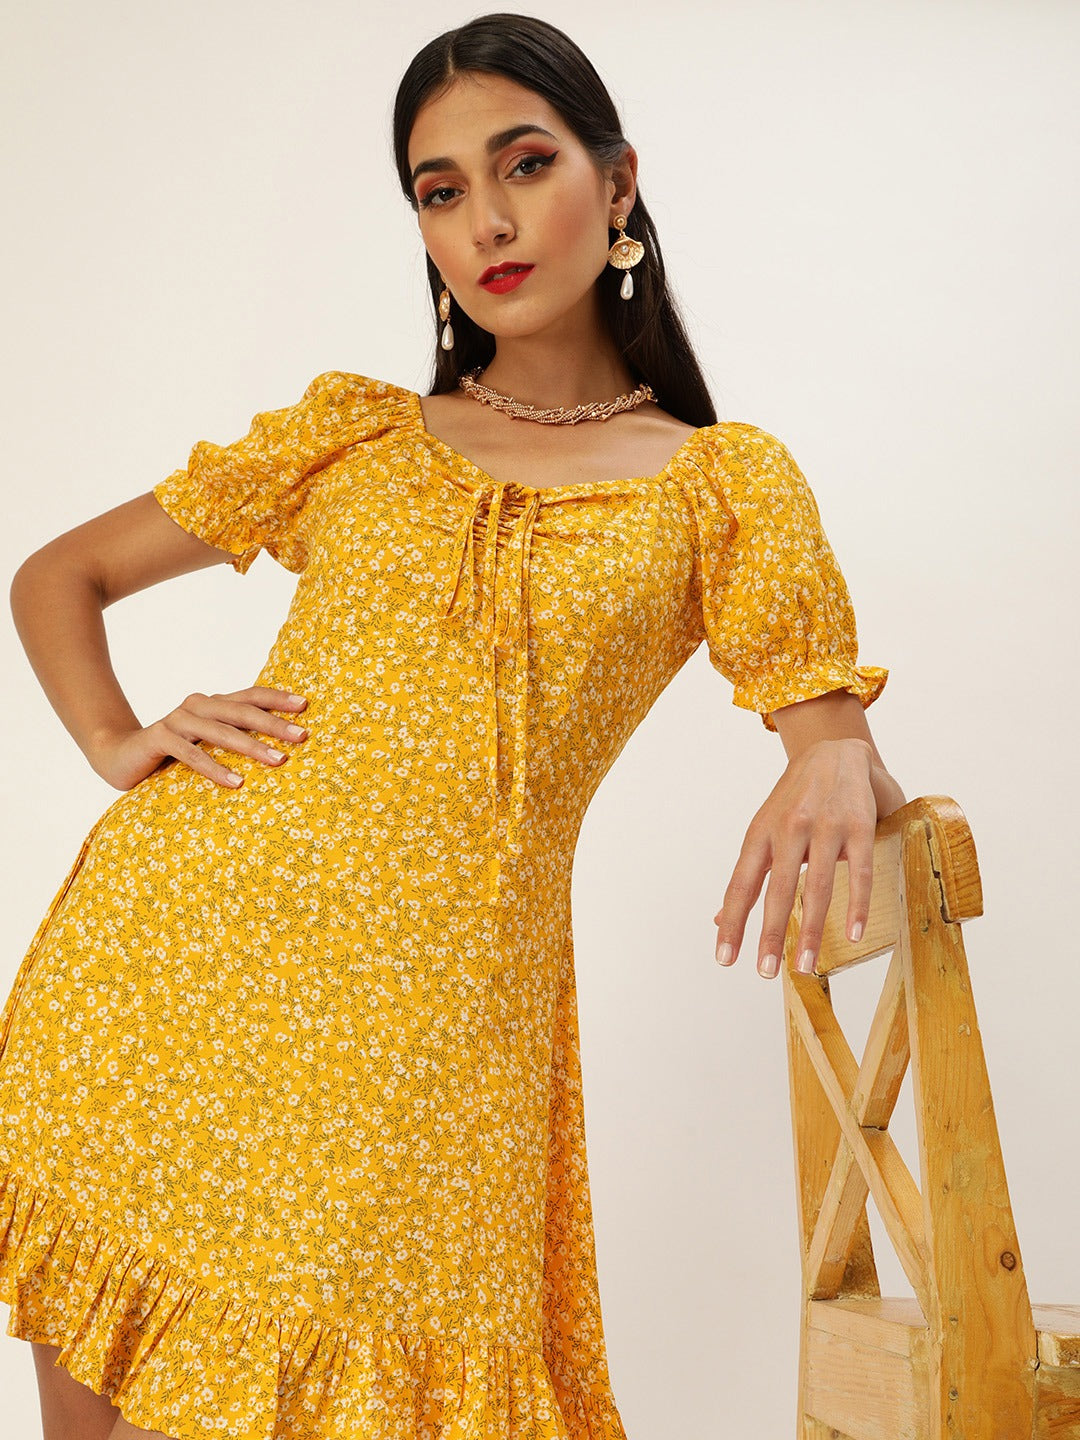 Berrylush Women Yellow Floral Print A-Line Midi Dress